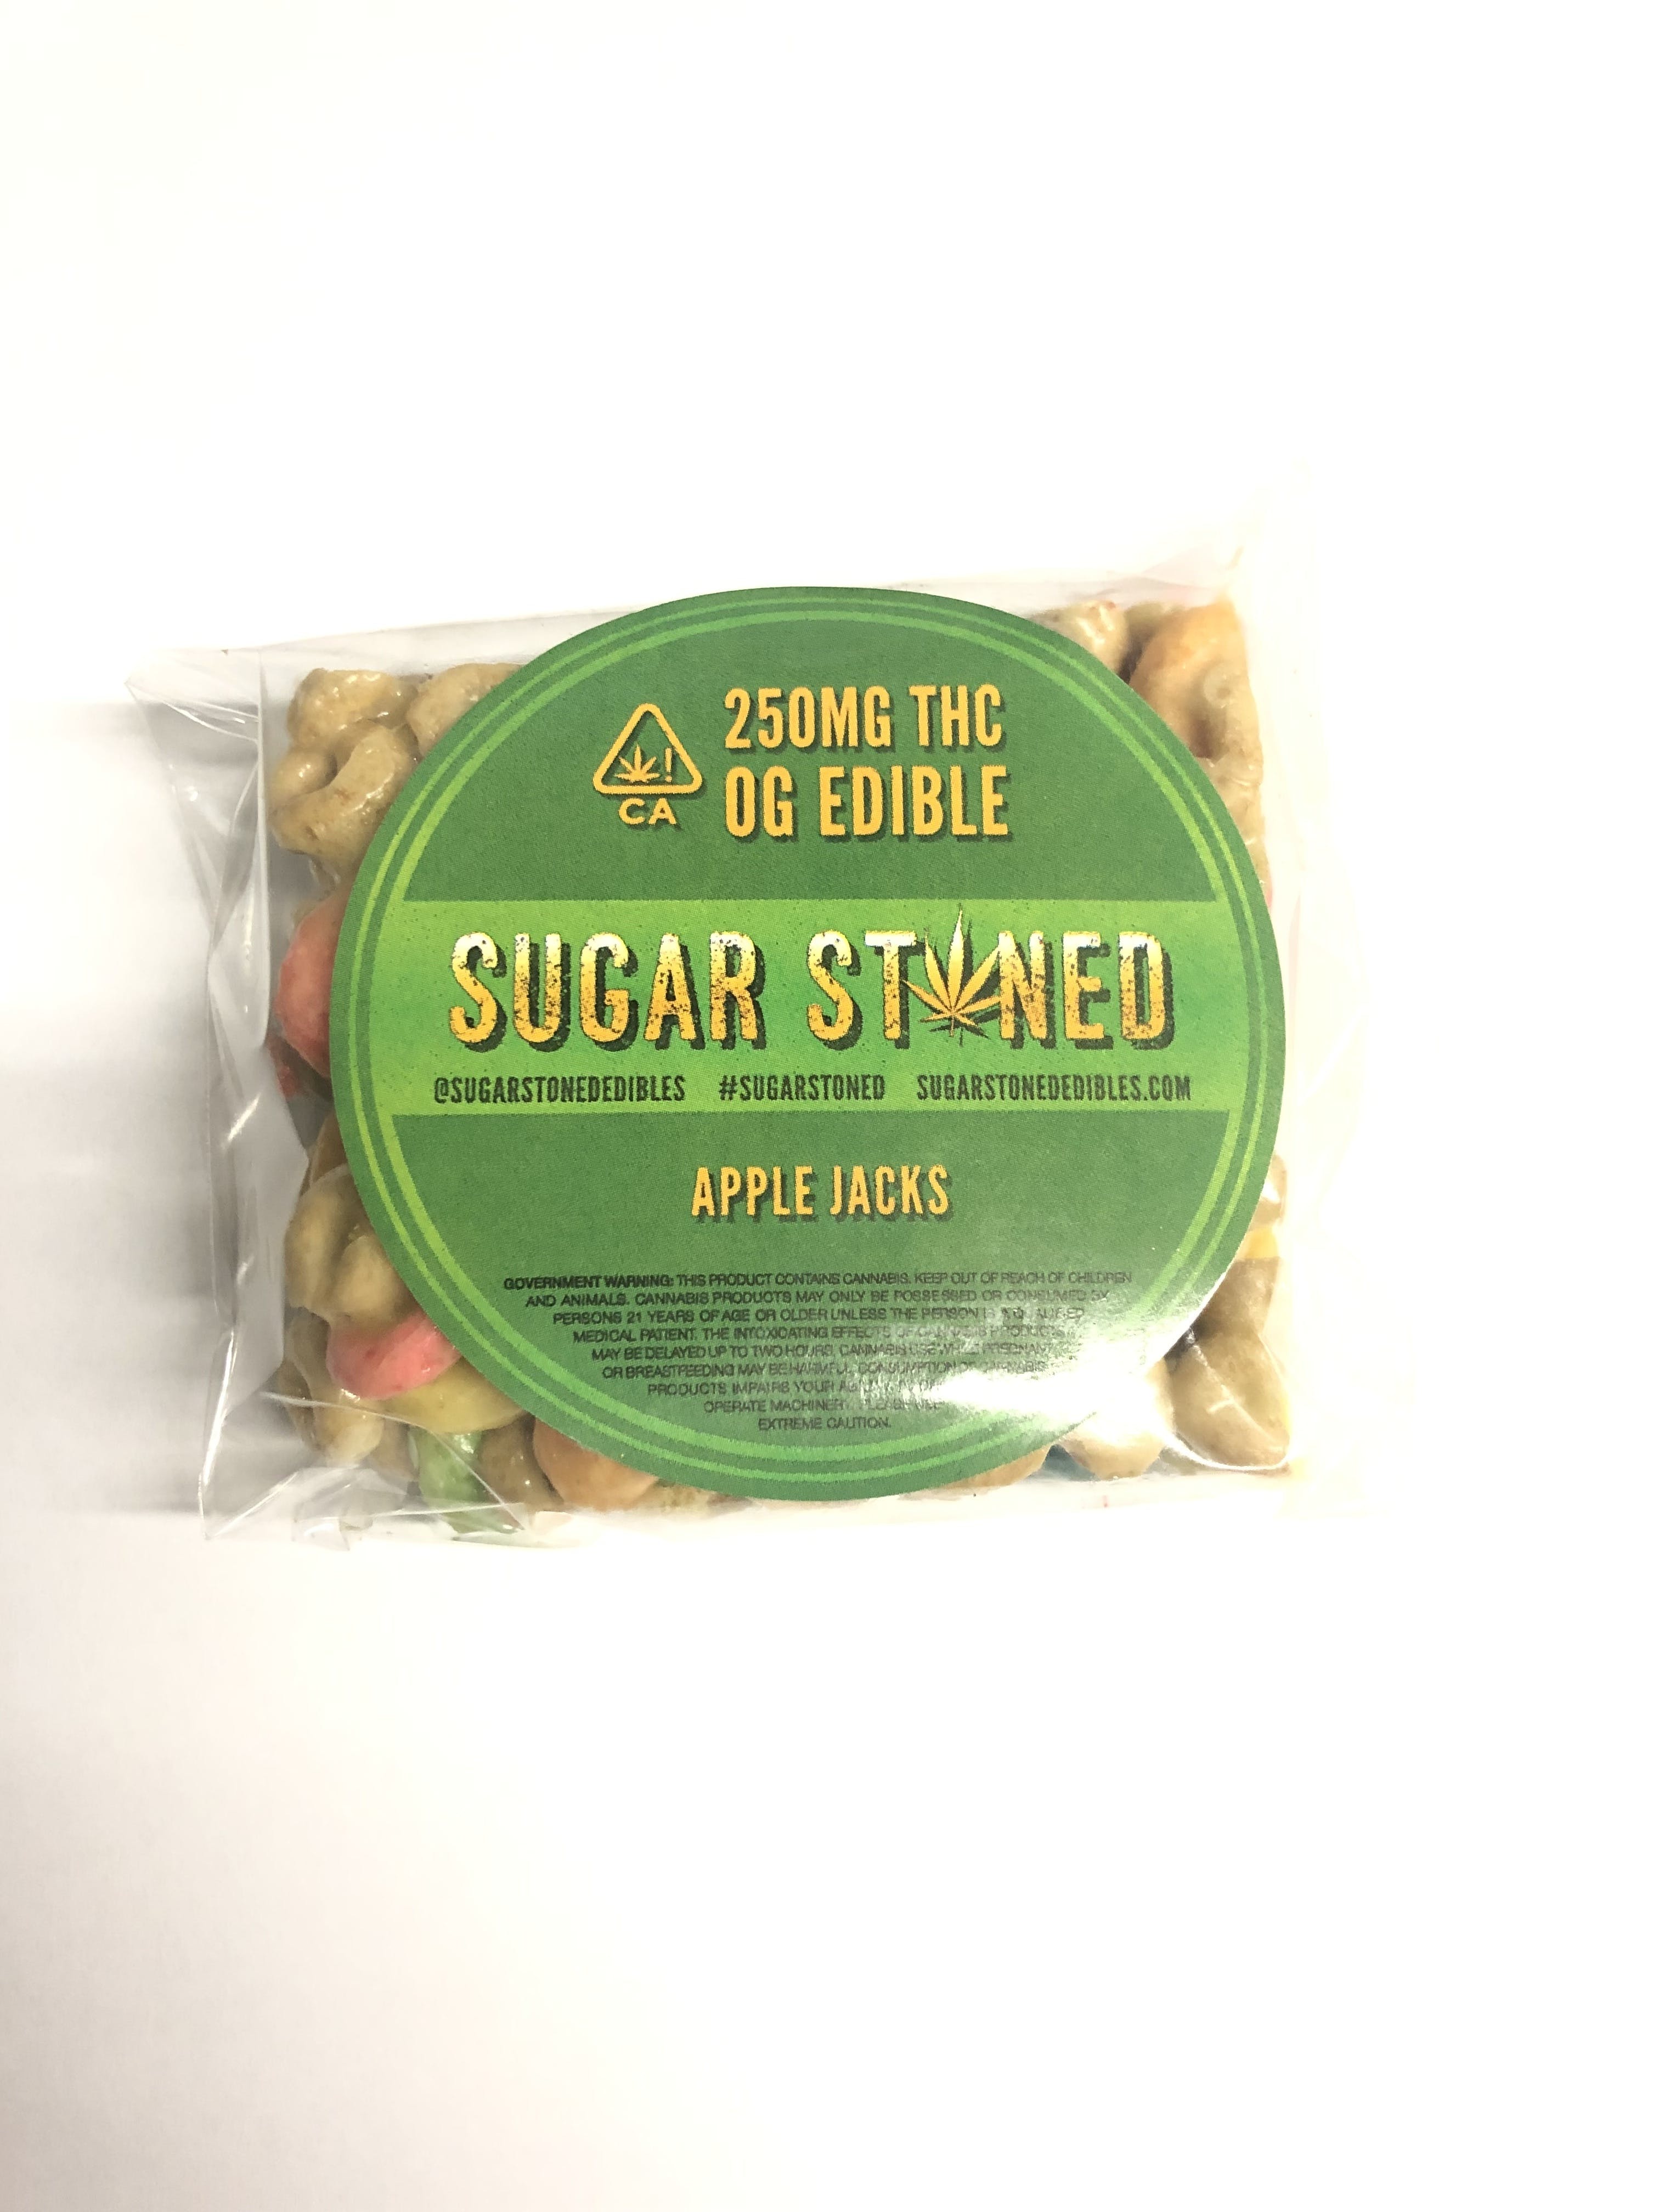 edible-sugar-stoned-250mg-apple-jacks-krispy